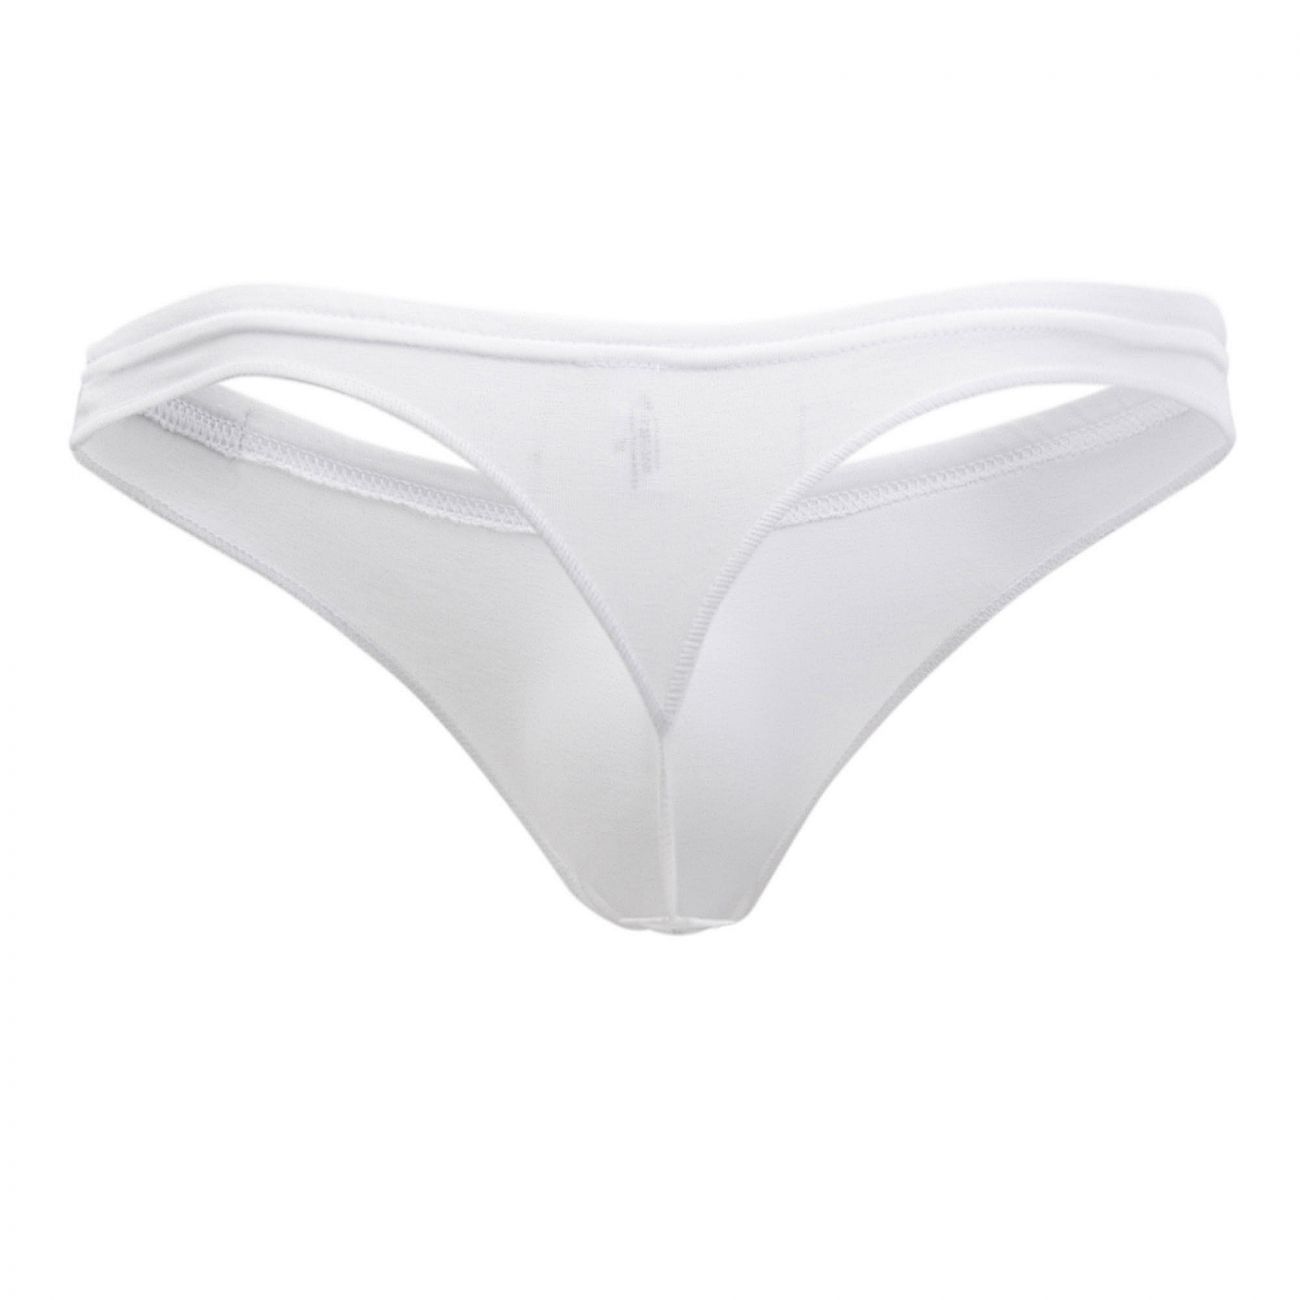 Doreanse Lingerie Men's Underwear Thong 41 Gram (1392) White Large for ...